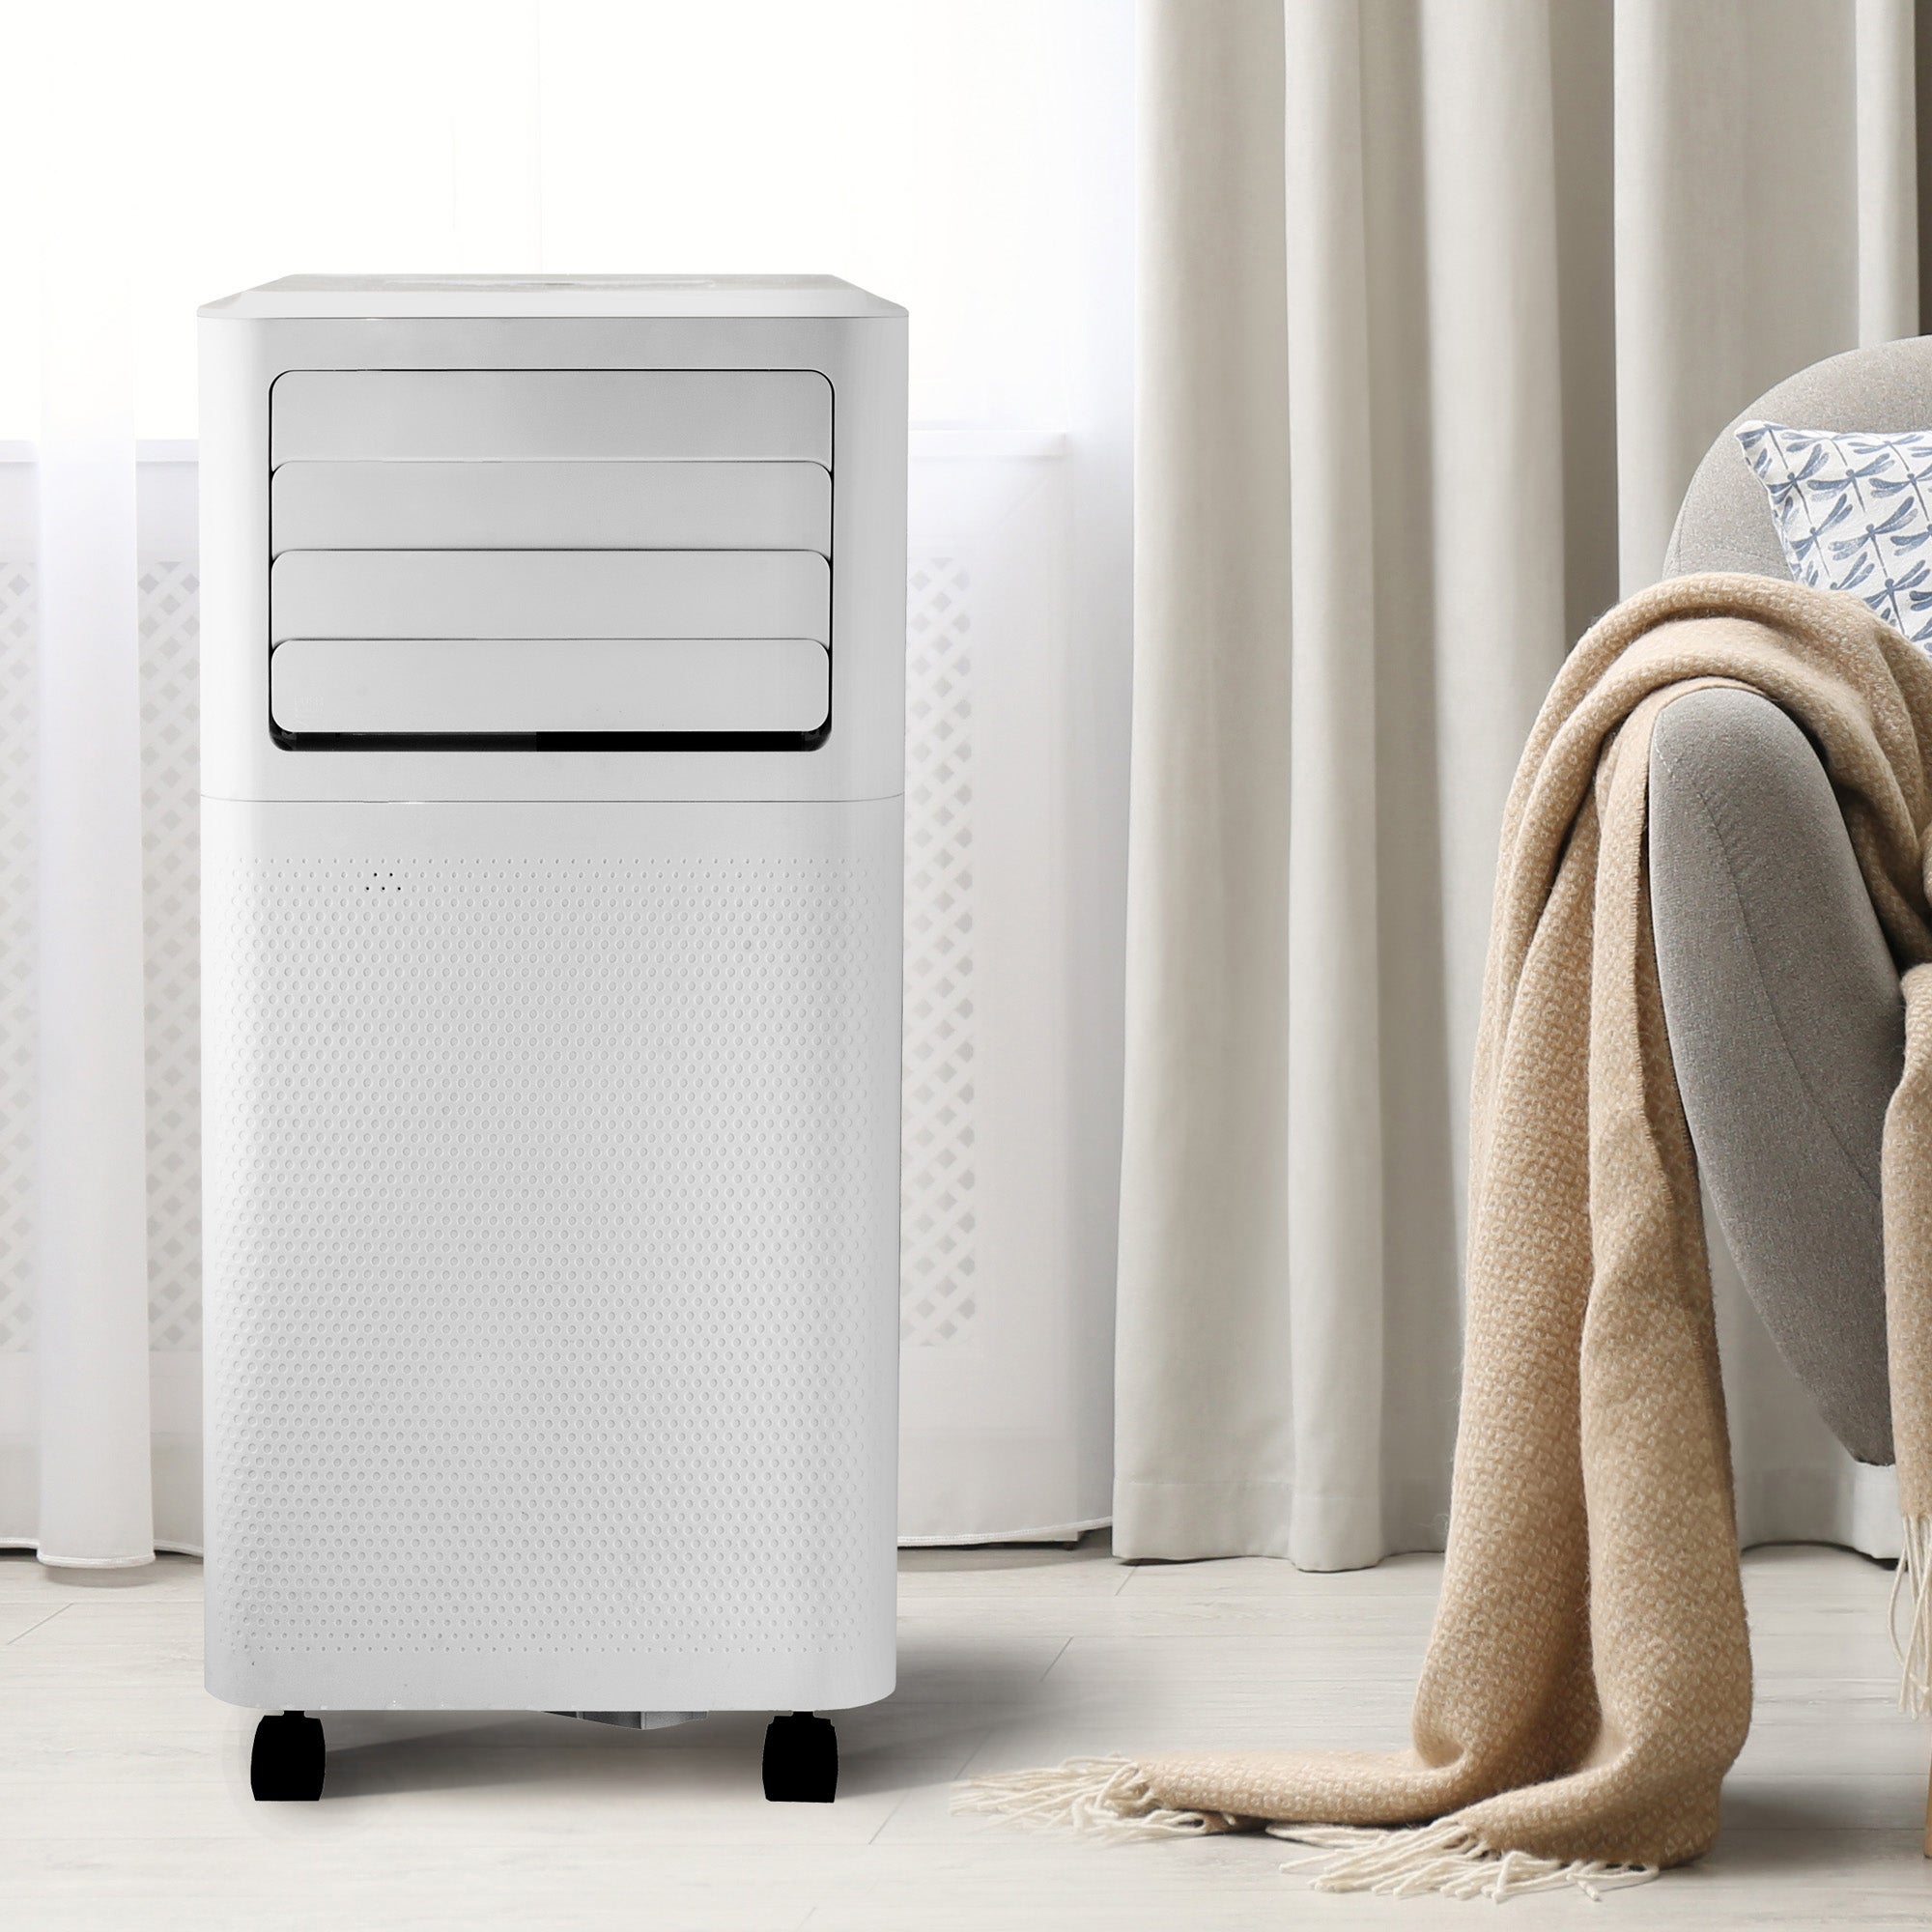 Igenix Smart 3 In 1 Portable 9000 BTU Air Conditioner White